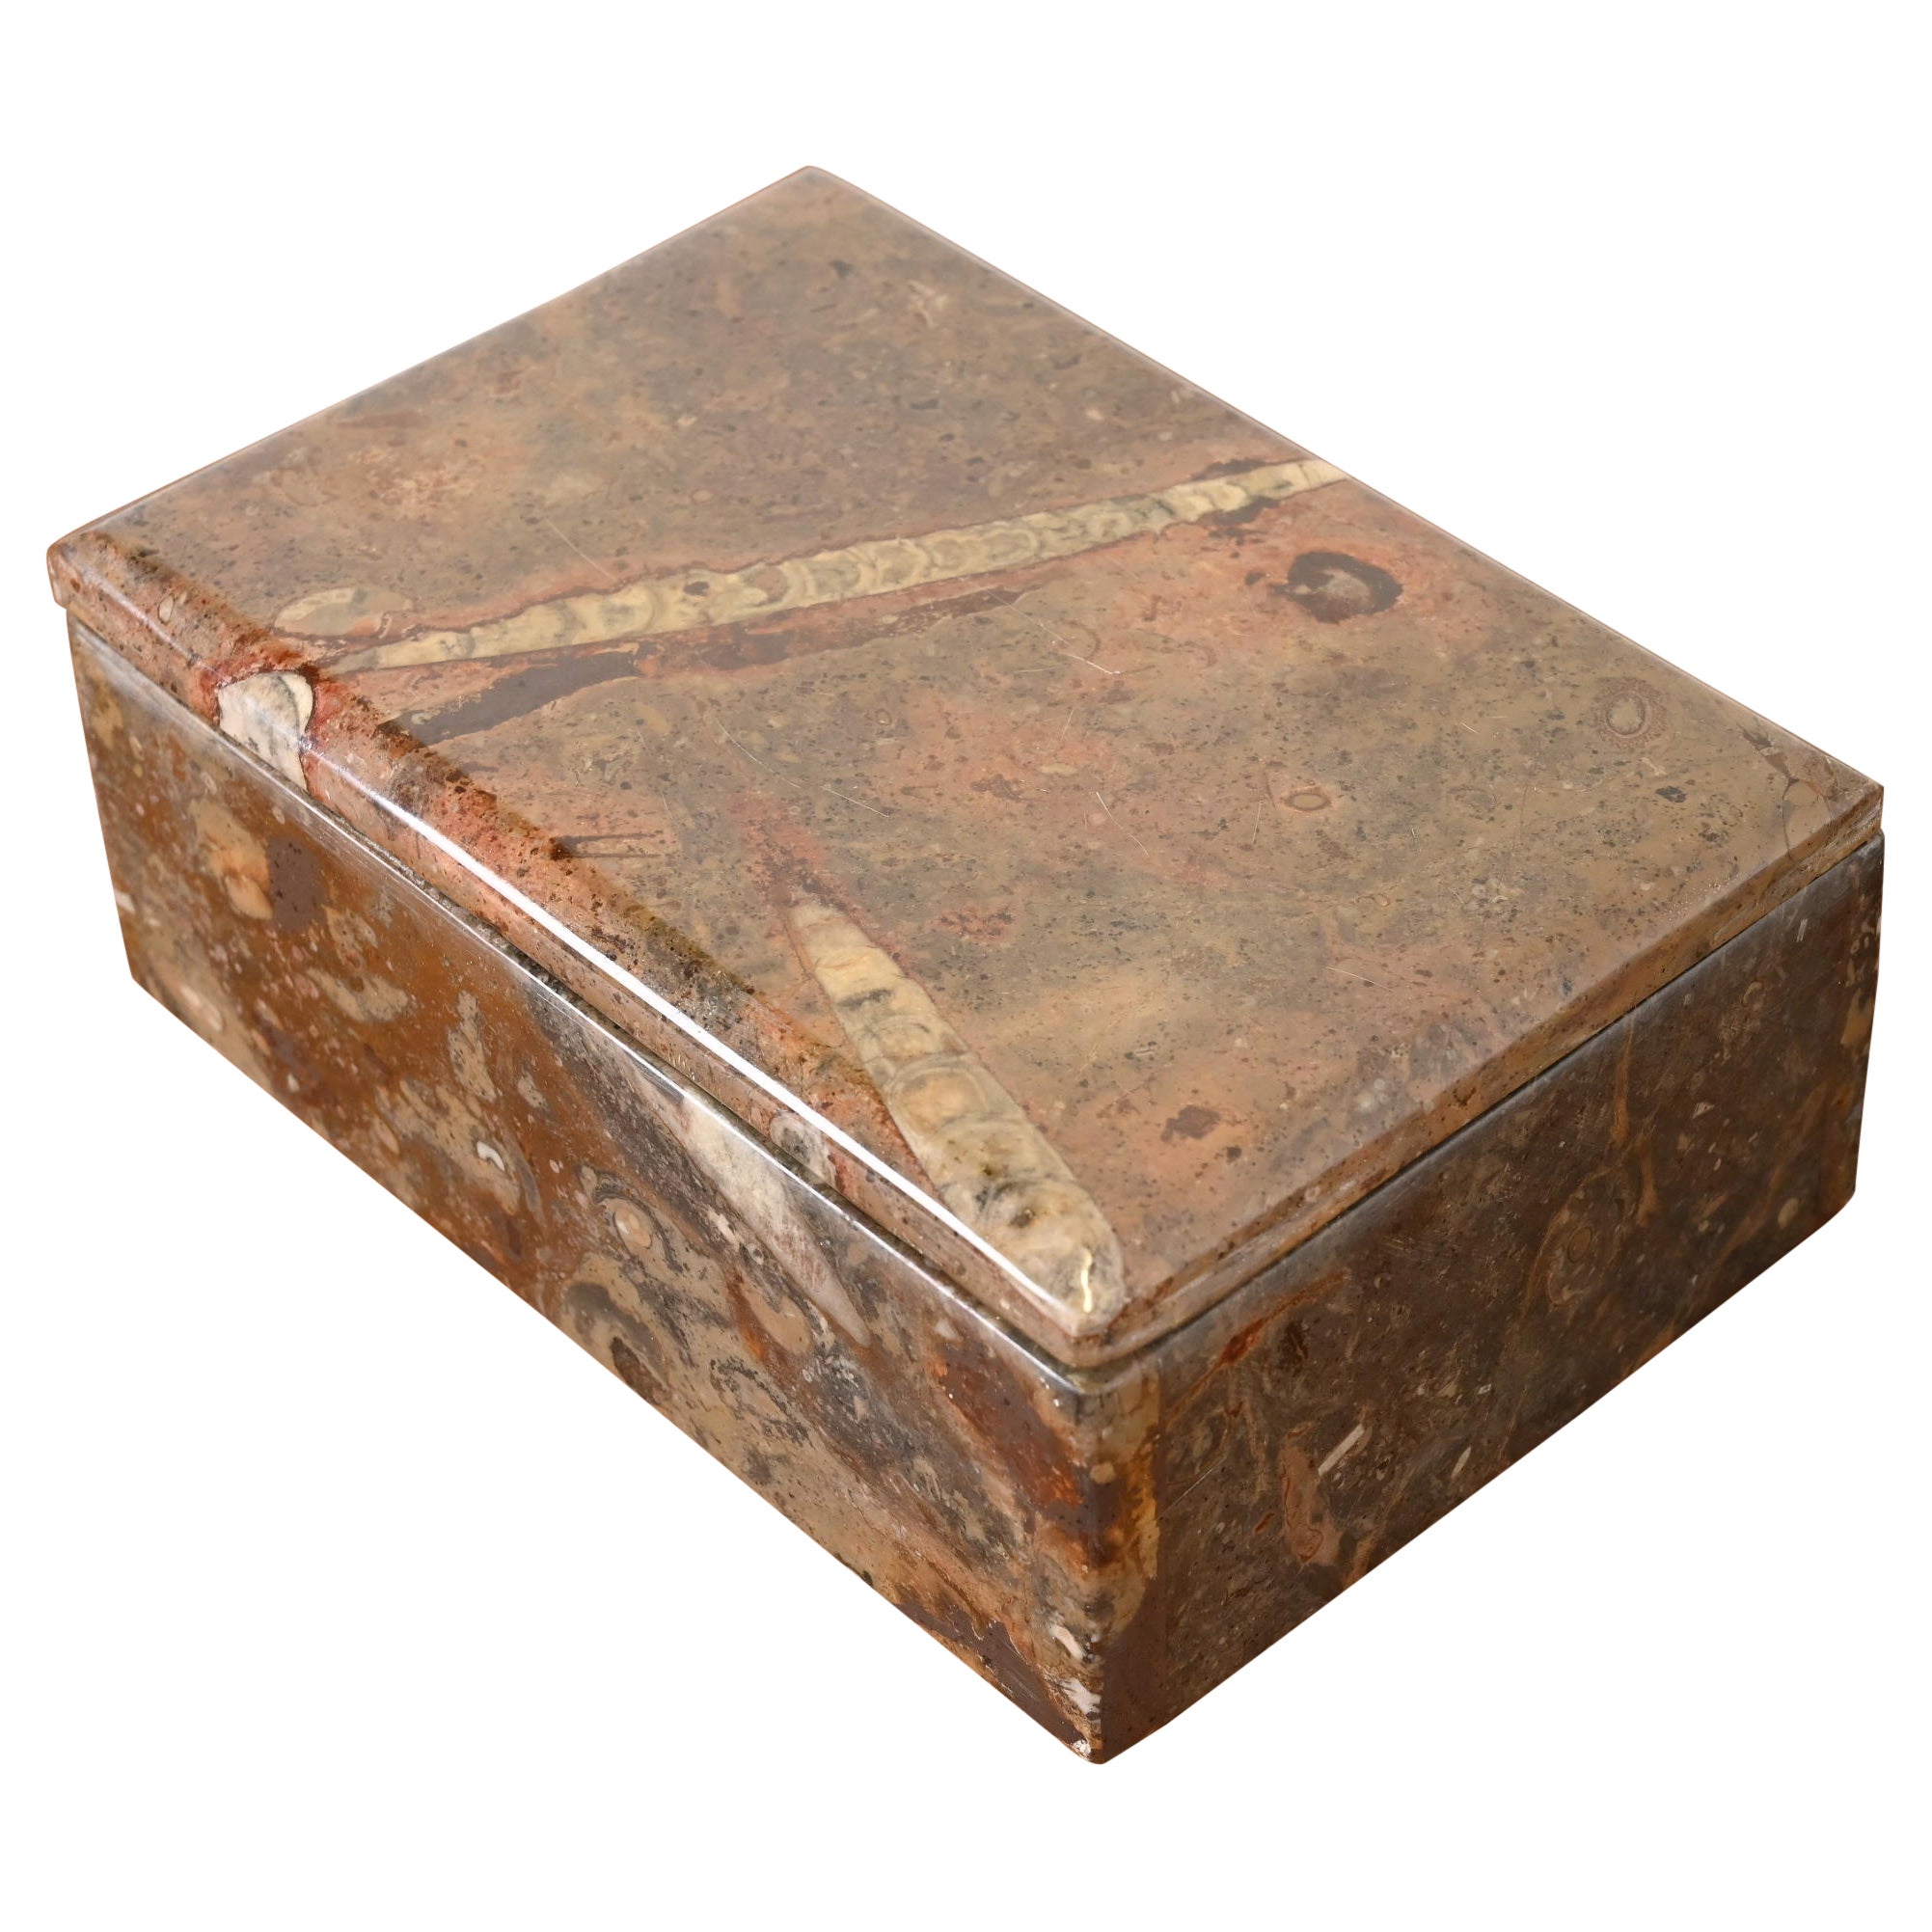 Vintage Fossilized Stone Dresser Box or Jewelry Box (boîte à vêtements ou à bijoux en pierre fossilisée)